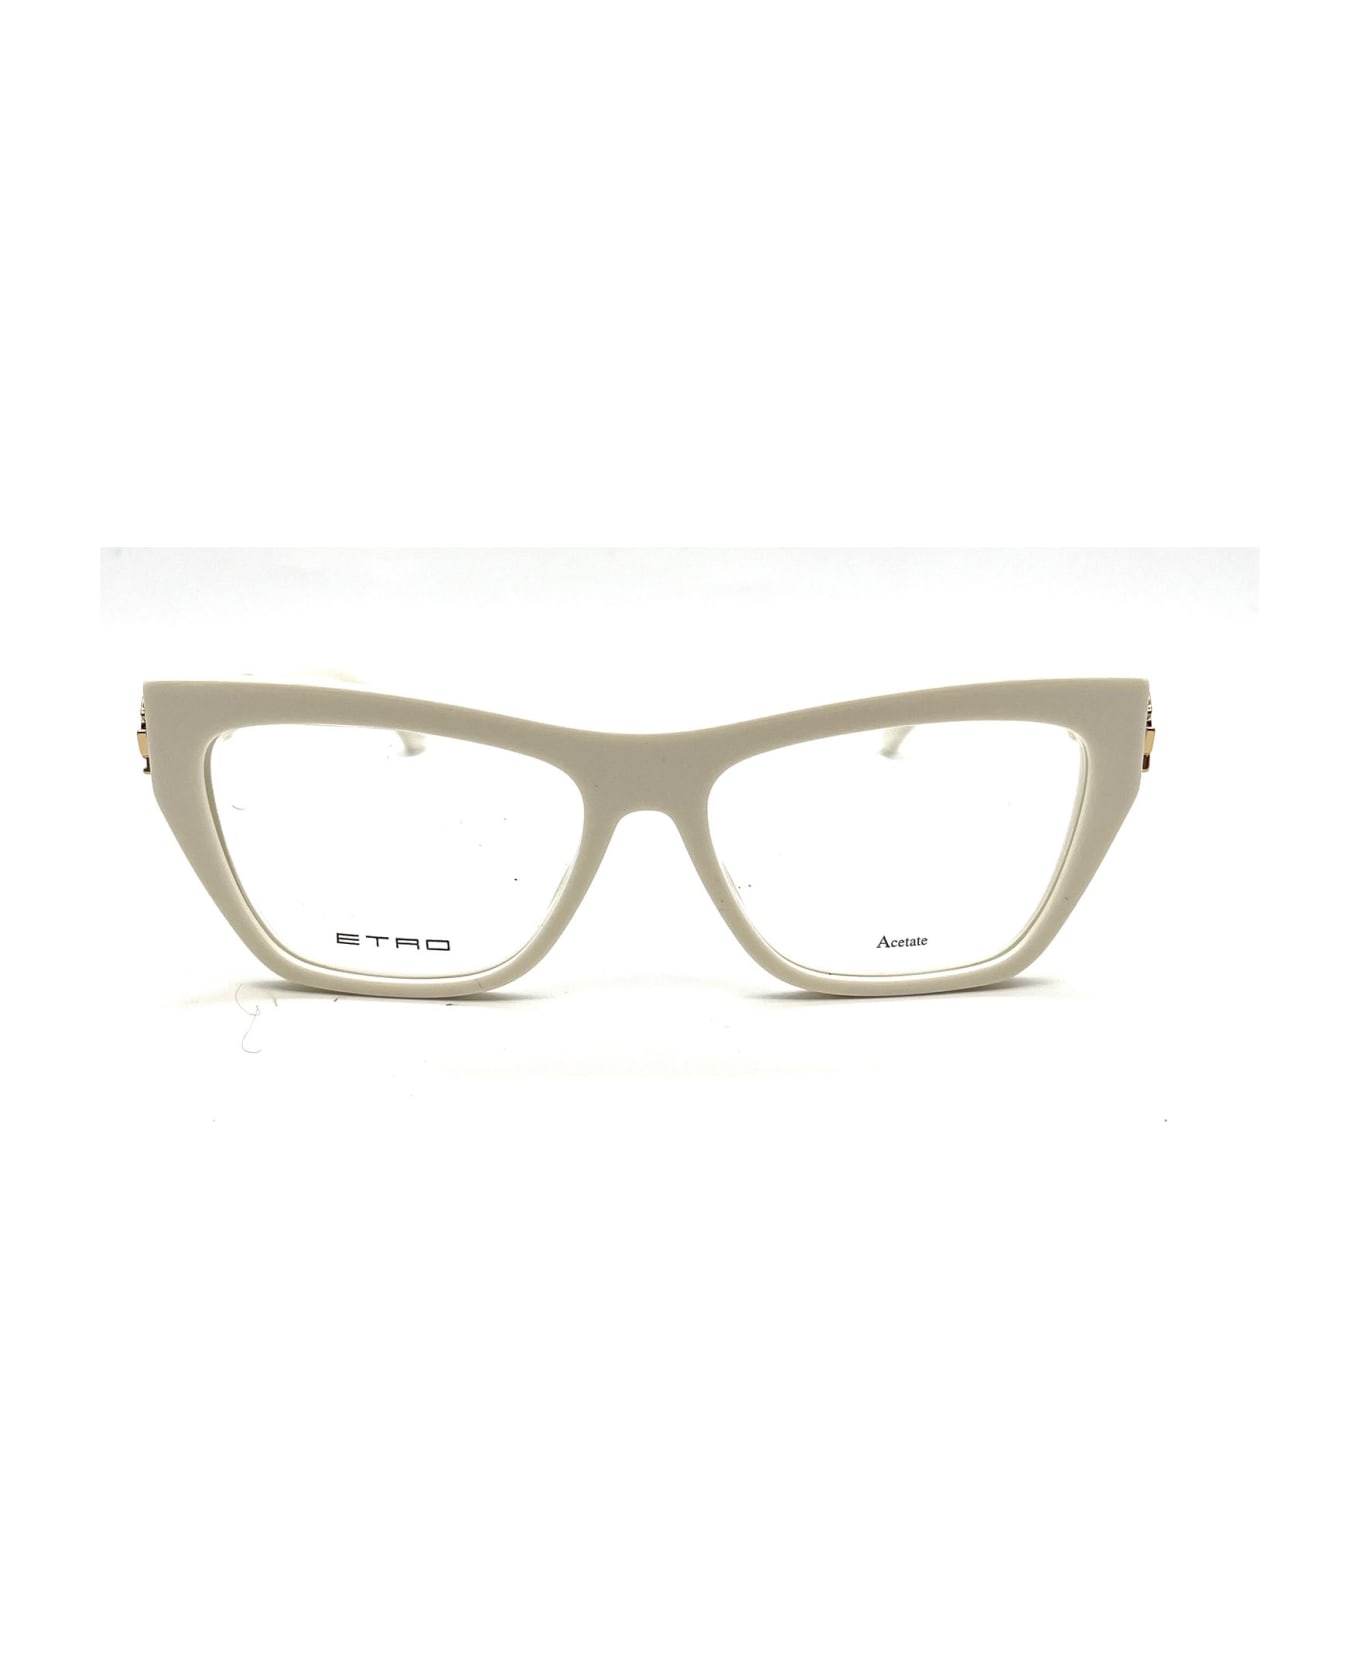 Etro 0029 Eyewear - Ivory